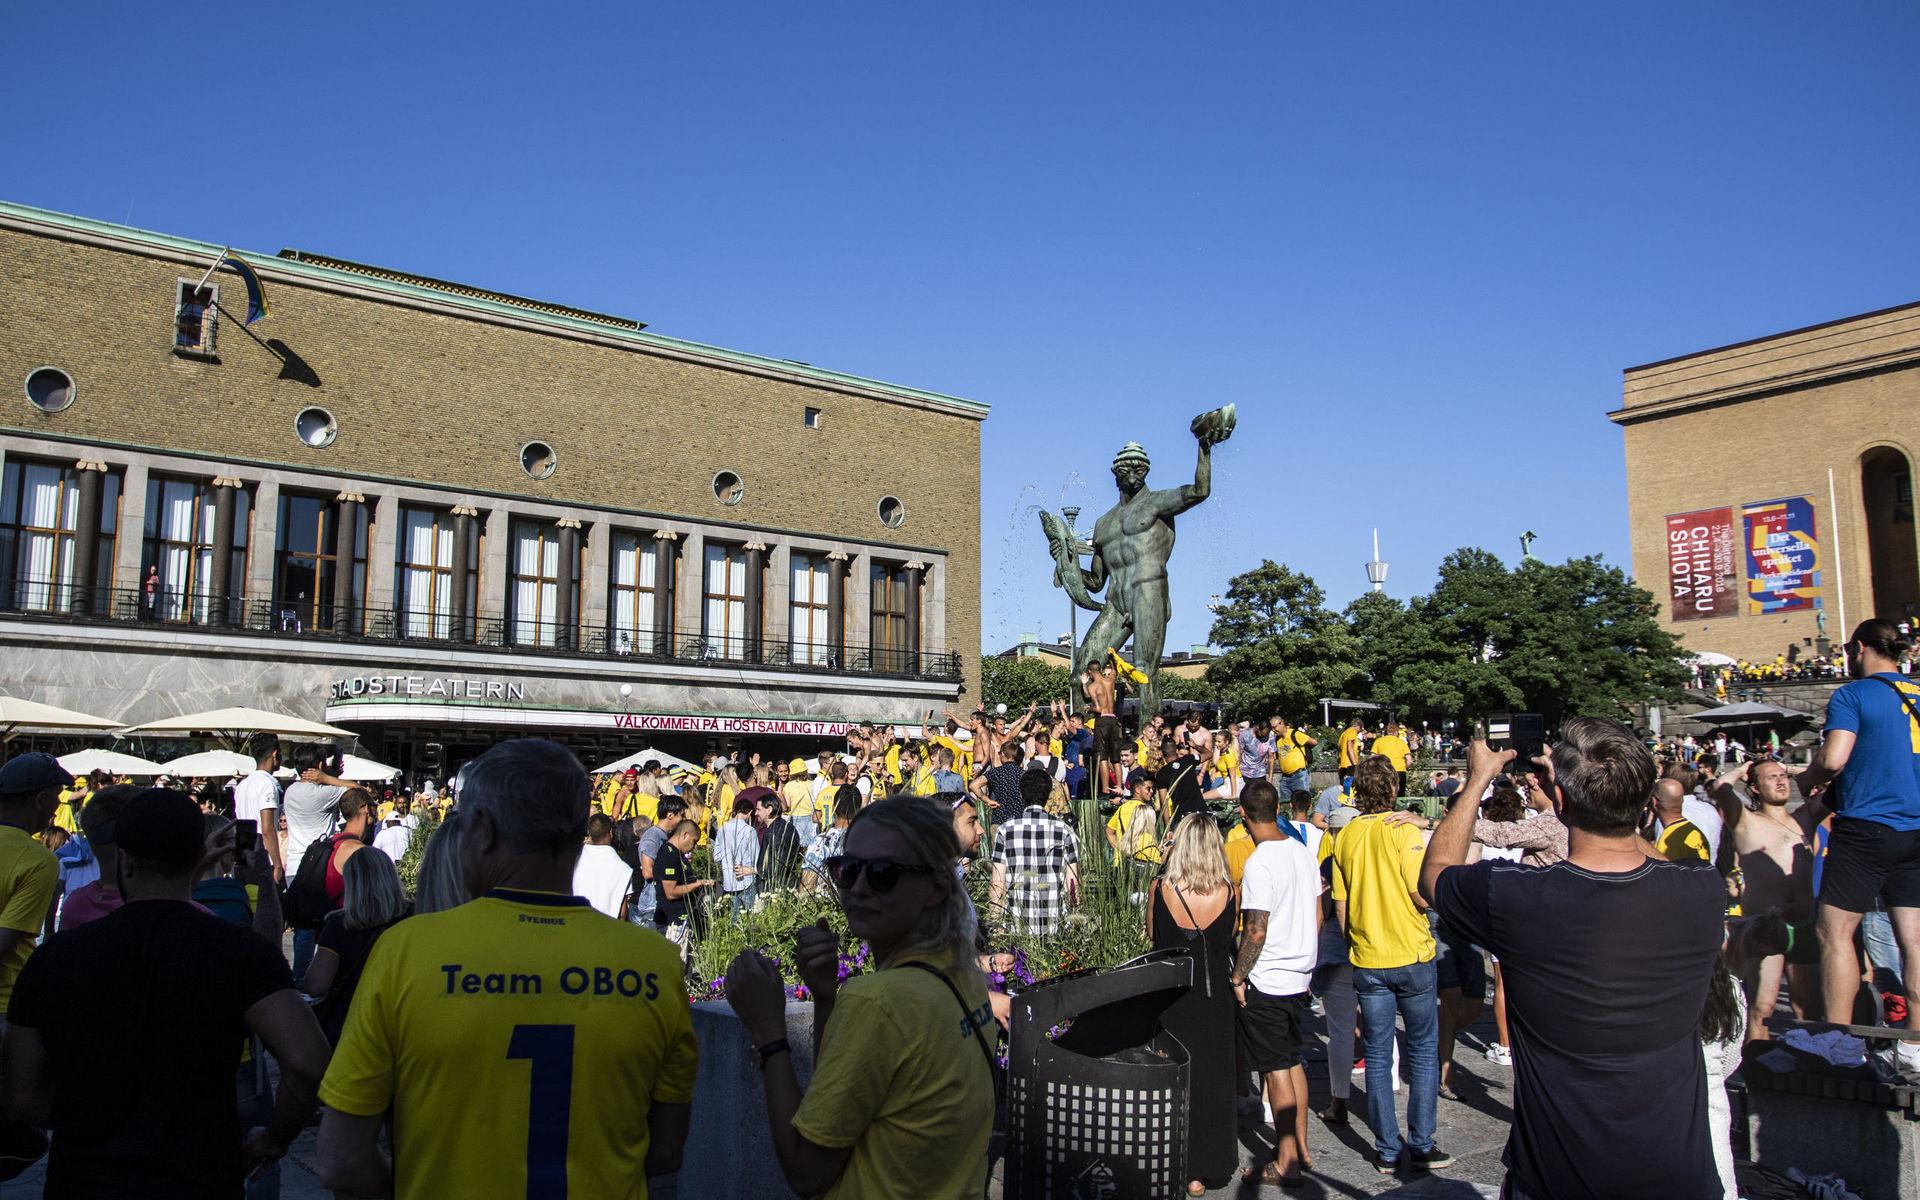 180703 Fans jublar och firar Sveriges seger vid Poseidon den 3 juli 2018 i Göteborg.Foto: Line Skaugrud Landevik / Bildbyrån / Cop 219